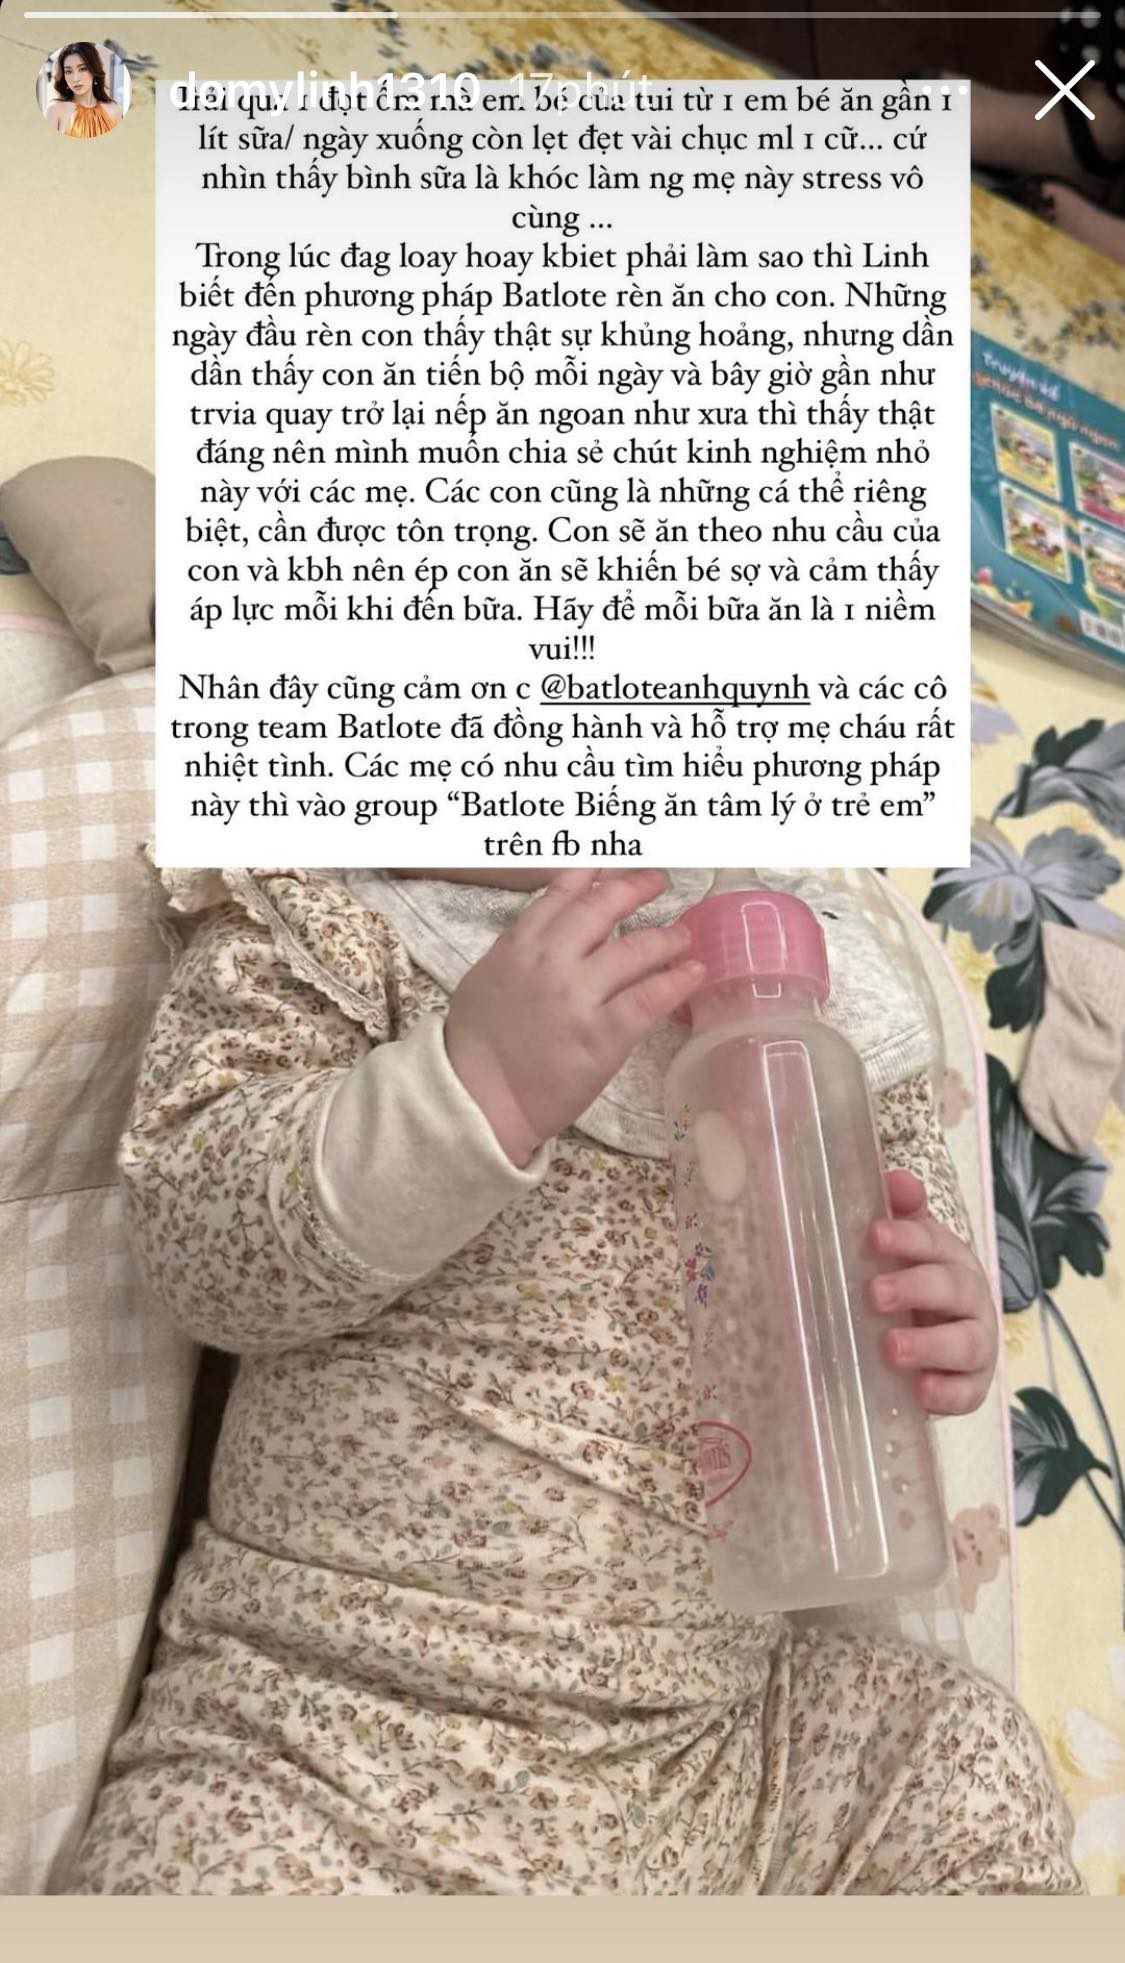 Con gái Đỗ Mỹ Linh ăn lẹt đẹt vài chục ml sữa/ cữ sau trận ốm, nàng hậu nhắn các mẹ phương pháp cực hay - Ảnh 1.